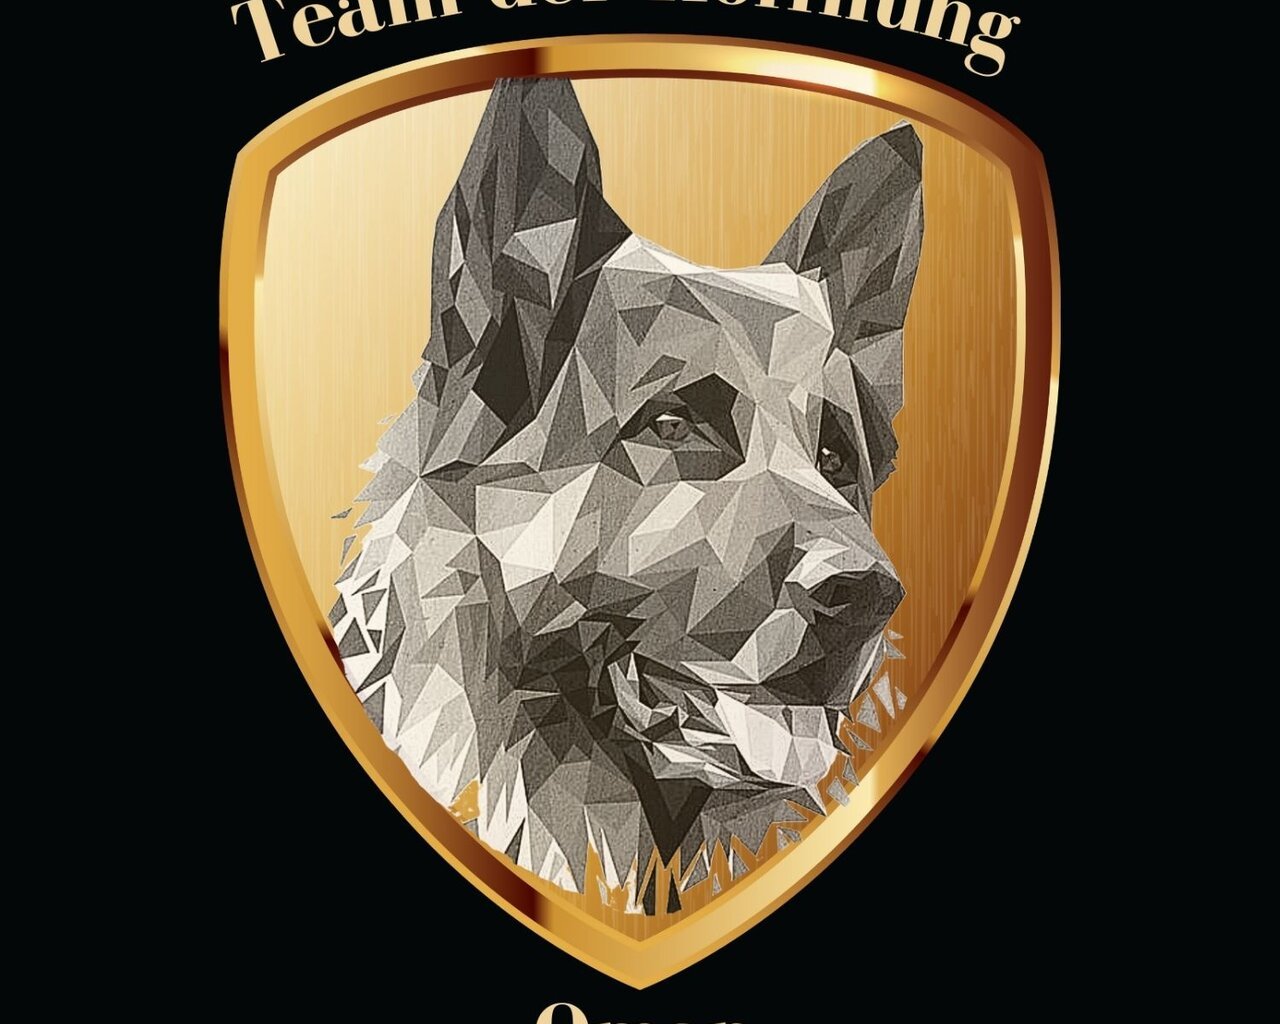 TEAM VON DER HOFFNUNG OMAN - Hodowle logo - WORLDPETNET #12